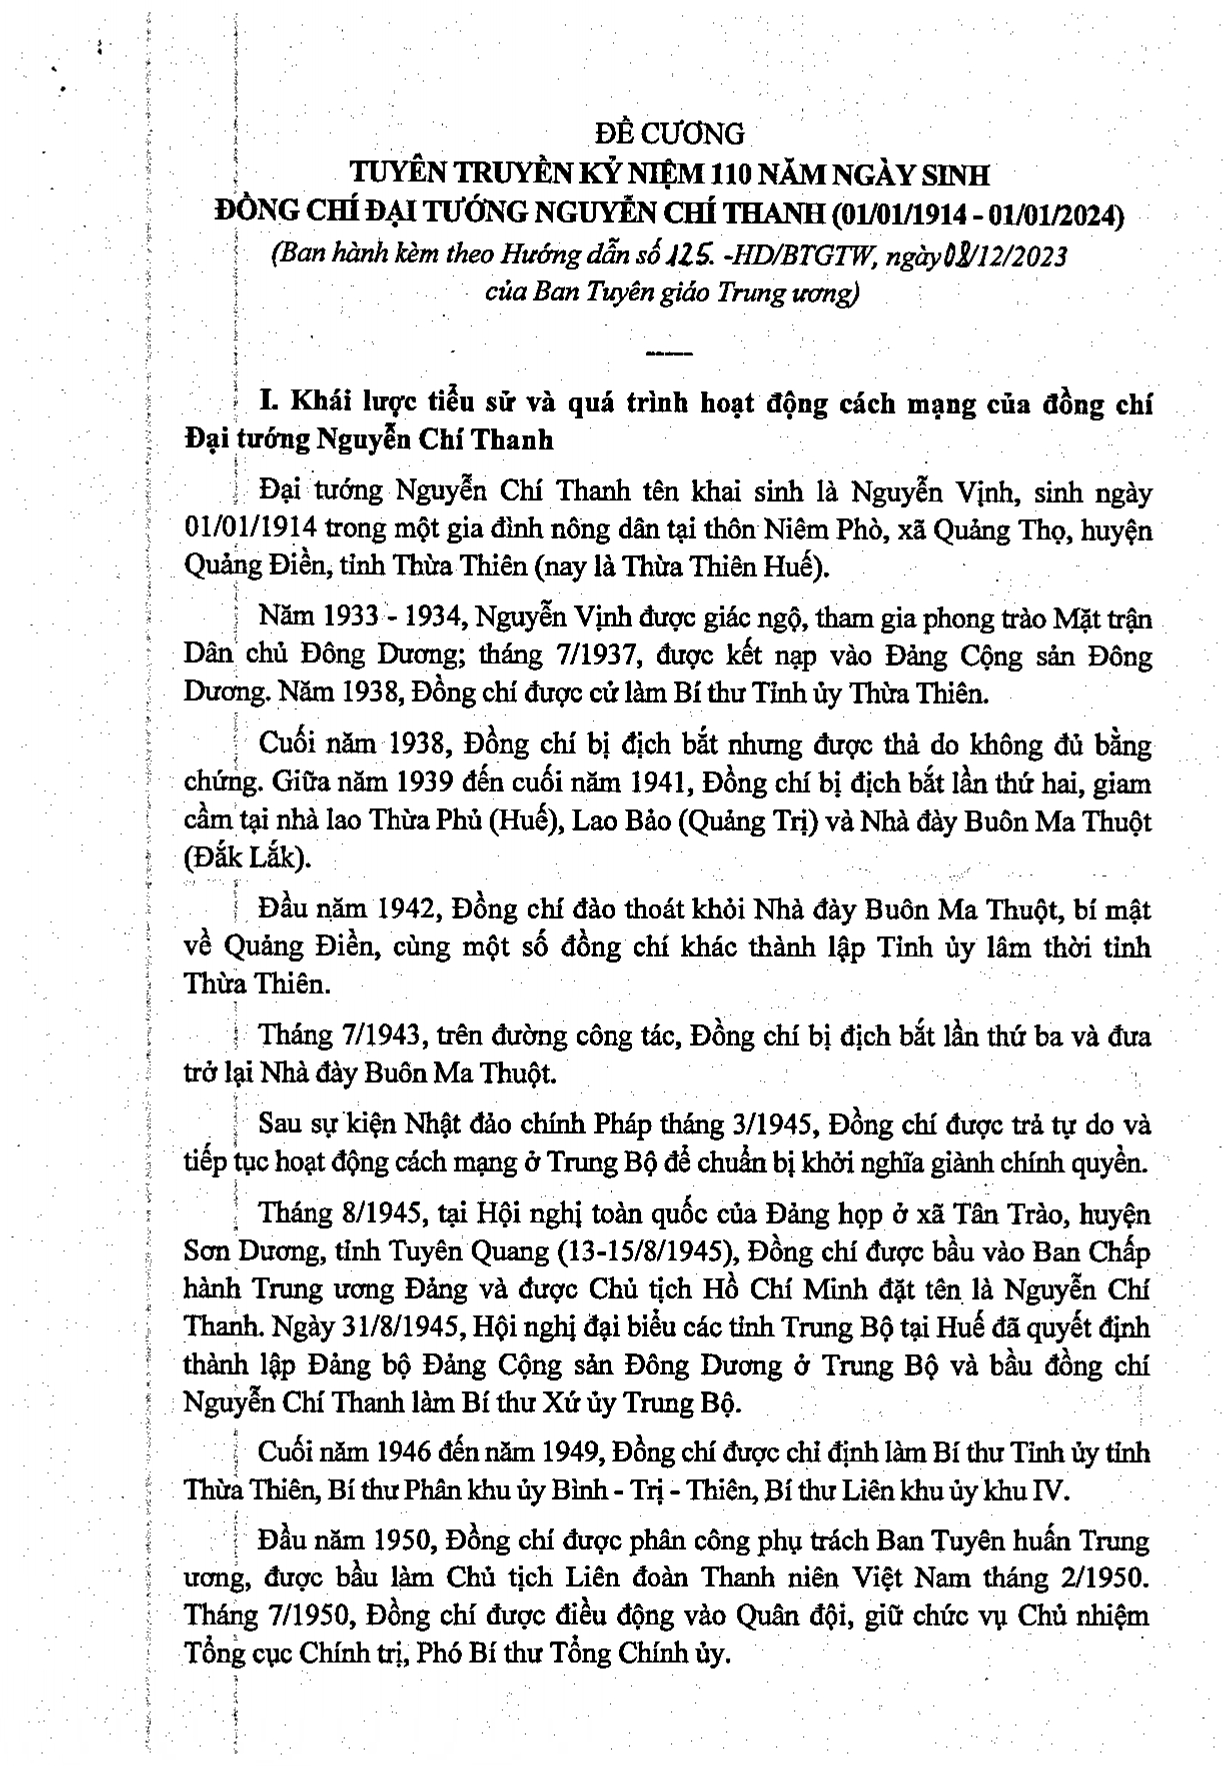 Đề cương tuyên truyền kỷ niệm 110 năm ngày sinh đồng chí Đại tướng Nguyễn Chí Thanh (01/01/1914 - 01/01/2024)